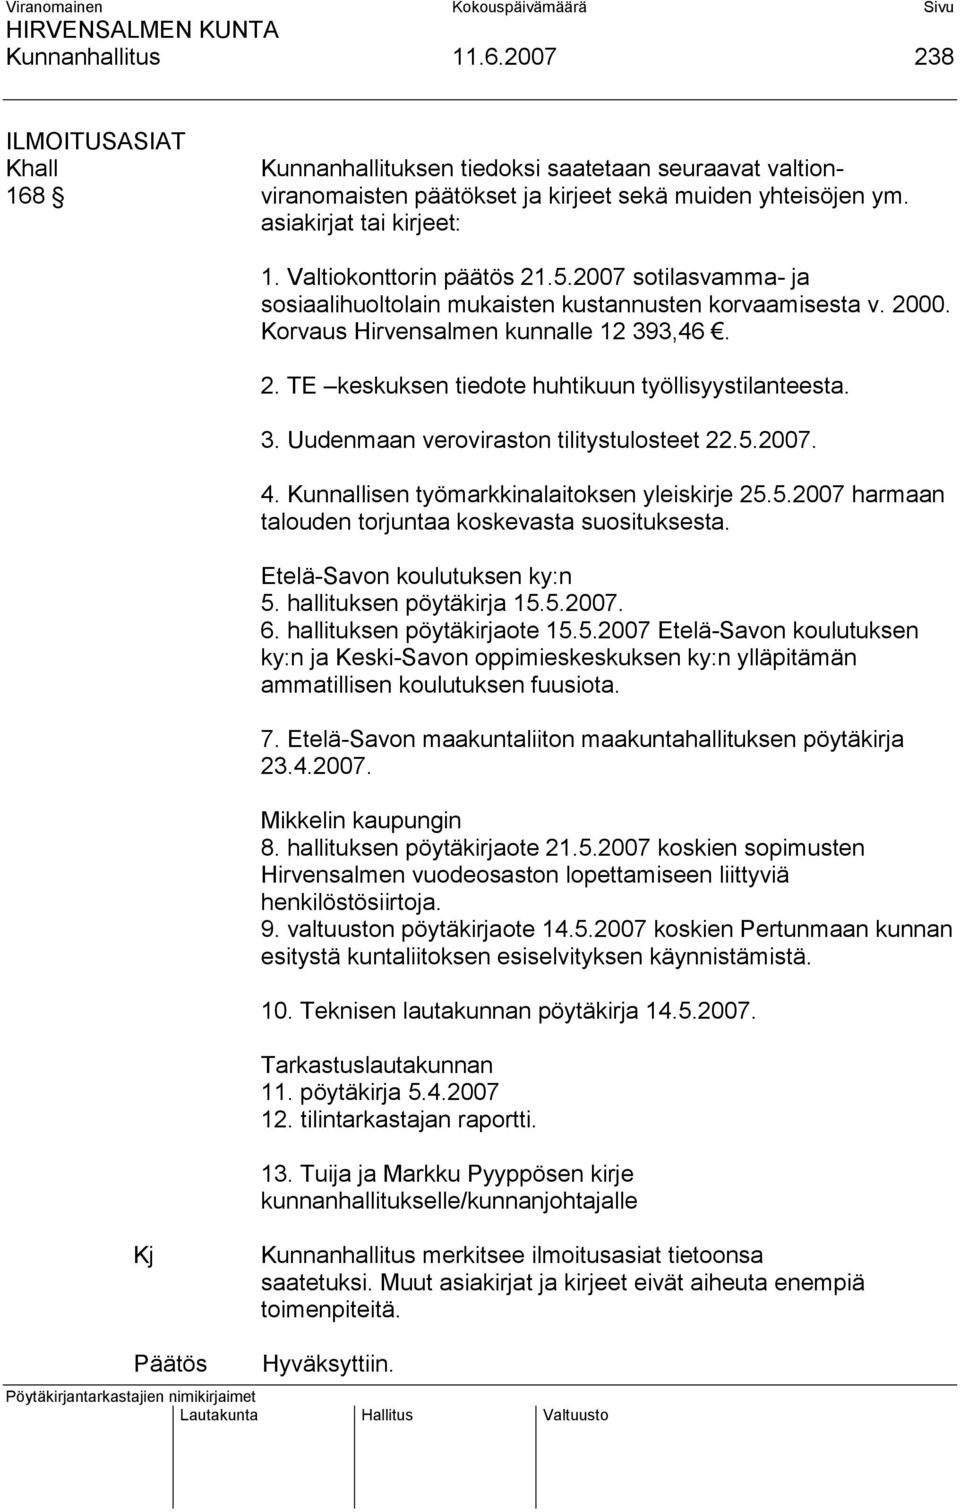 3. Uudenmaan veroviraston tilitystulosteet 22.5.2007. 4. Kunnallisen työmarkkinalaitoksen yleiskirje 25.5.2007 harmaan talouden torjuntaa koskevasta suosituksesta. Etelä-Savon koulutuksen ky:n 5.